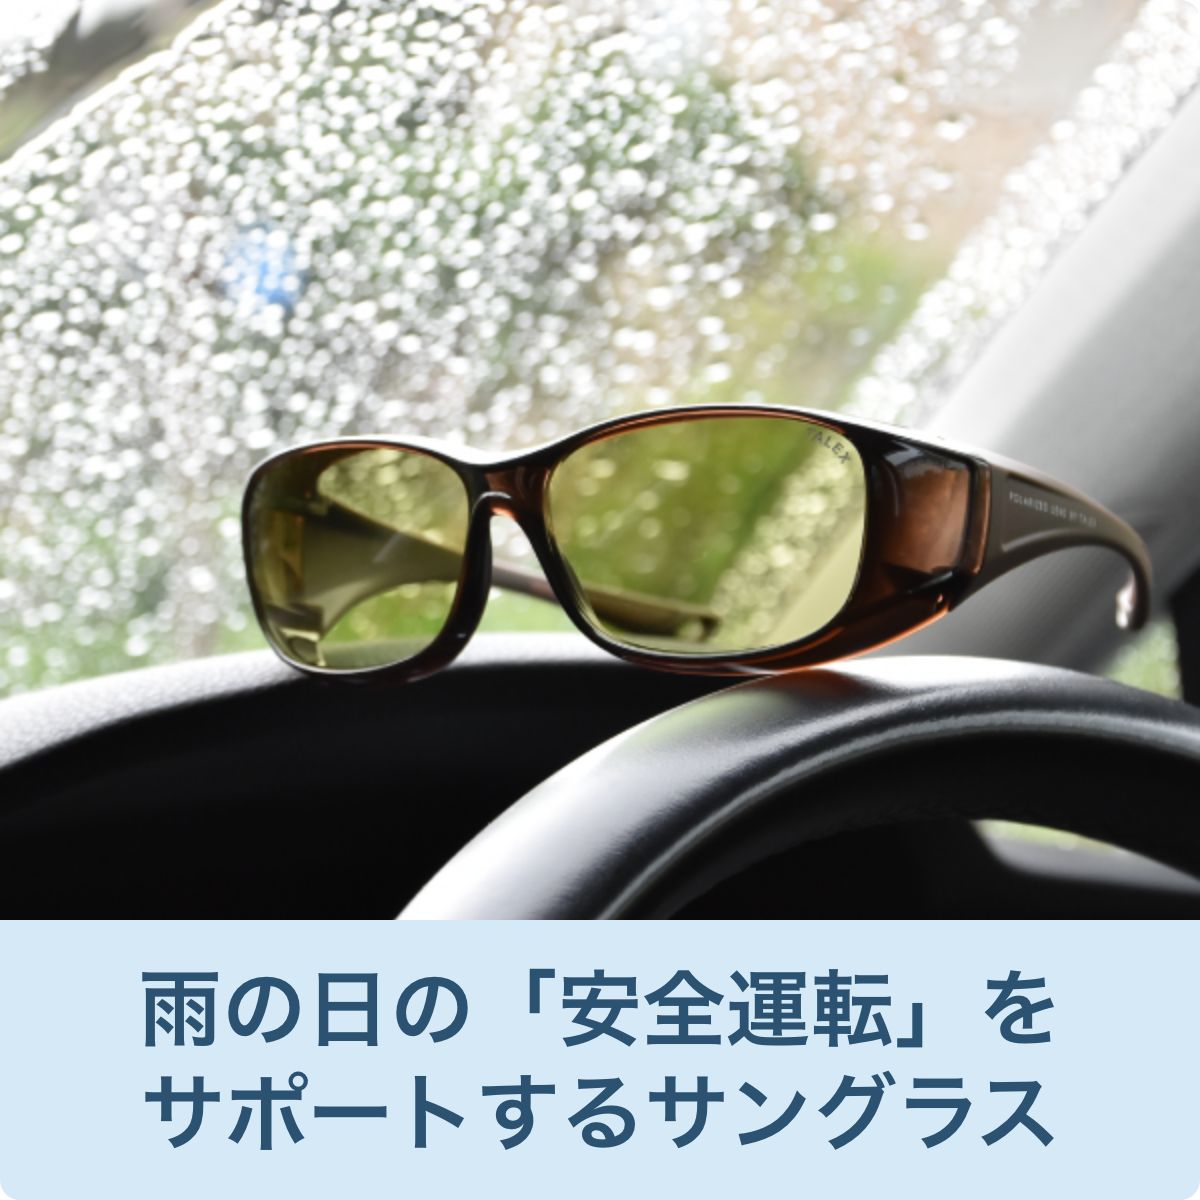 雨の日の「安全運転」をサポートするサングラス | 偏光レンズ・偏光 